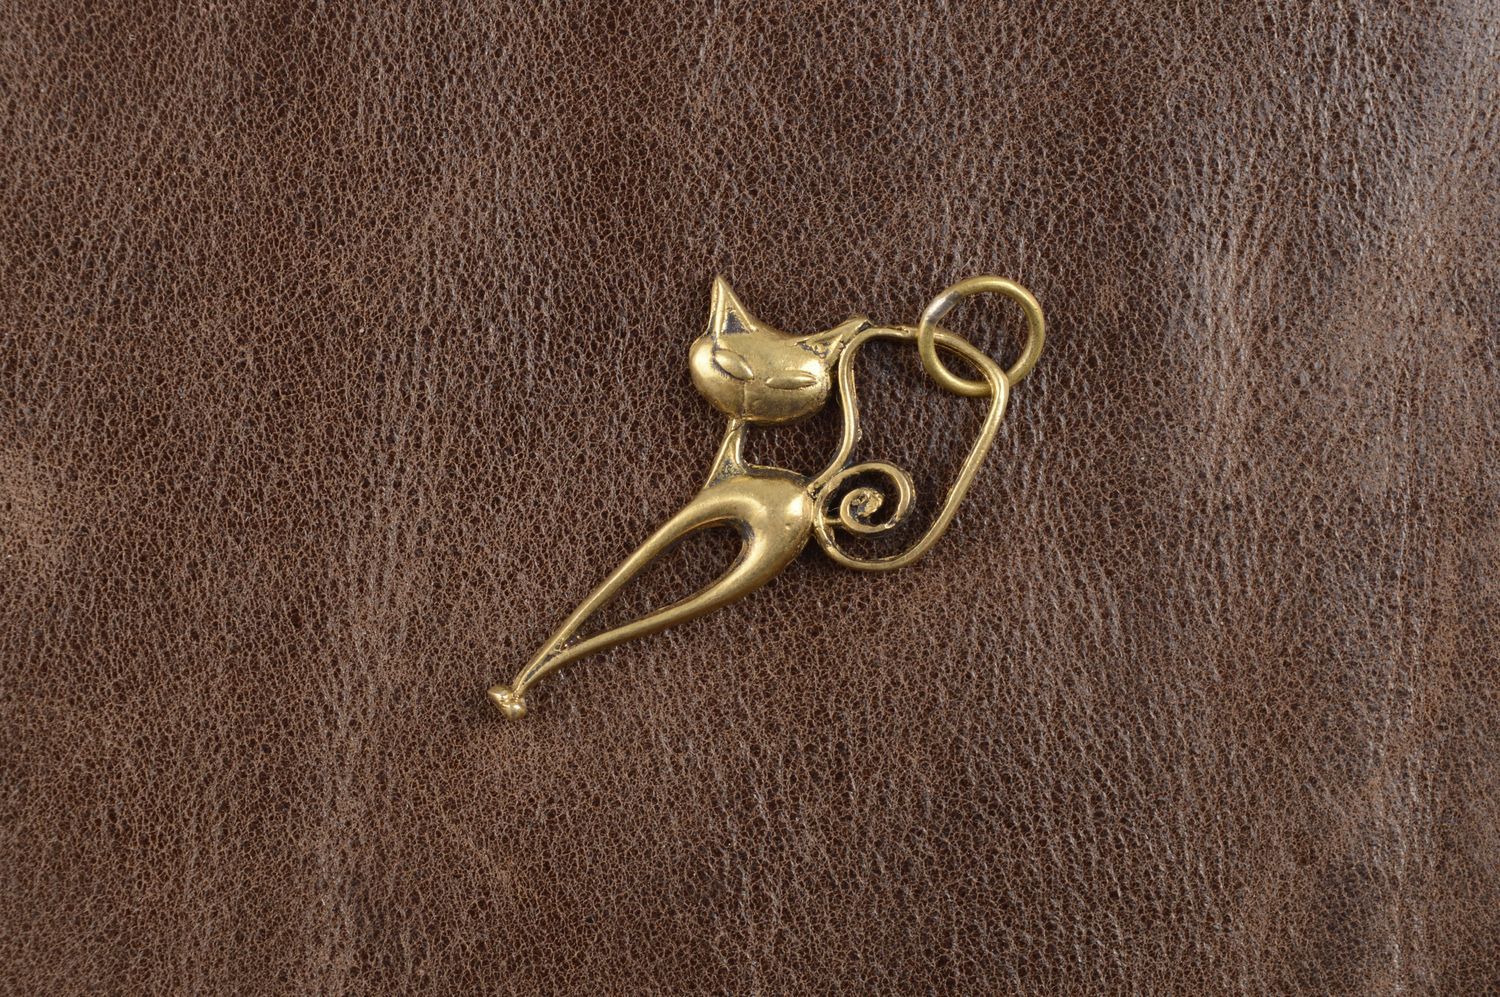 Украшение ручной работы украшение из бронзы кулон на шею в виде кошечки фото 1